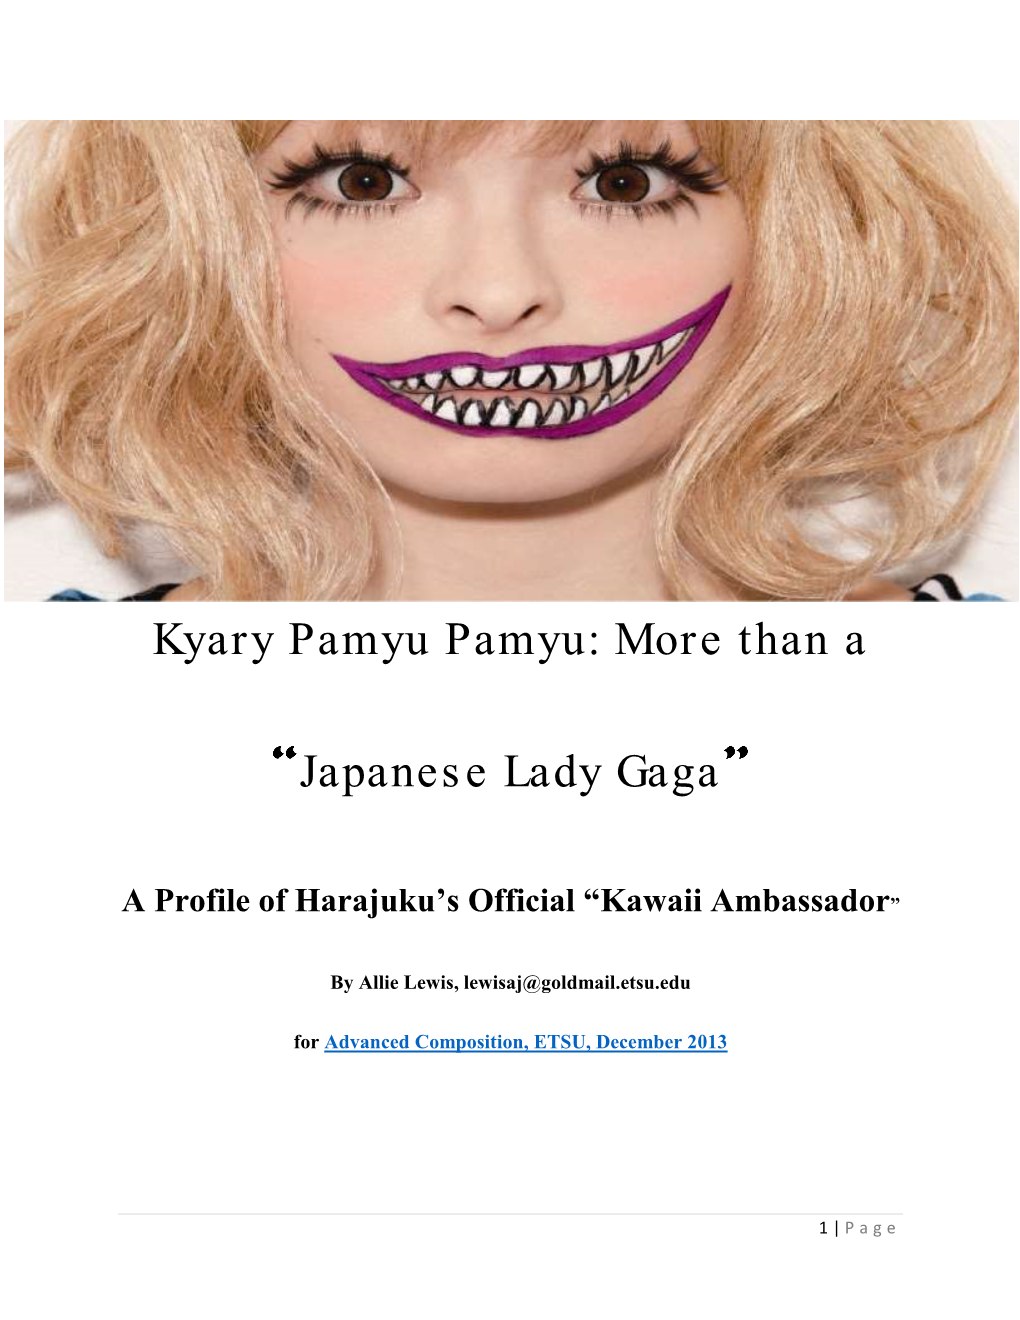 Kyary Pamyu Pamyu: More Than a Japanese Lady Gaga